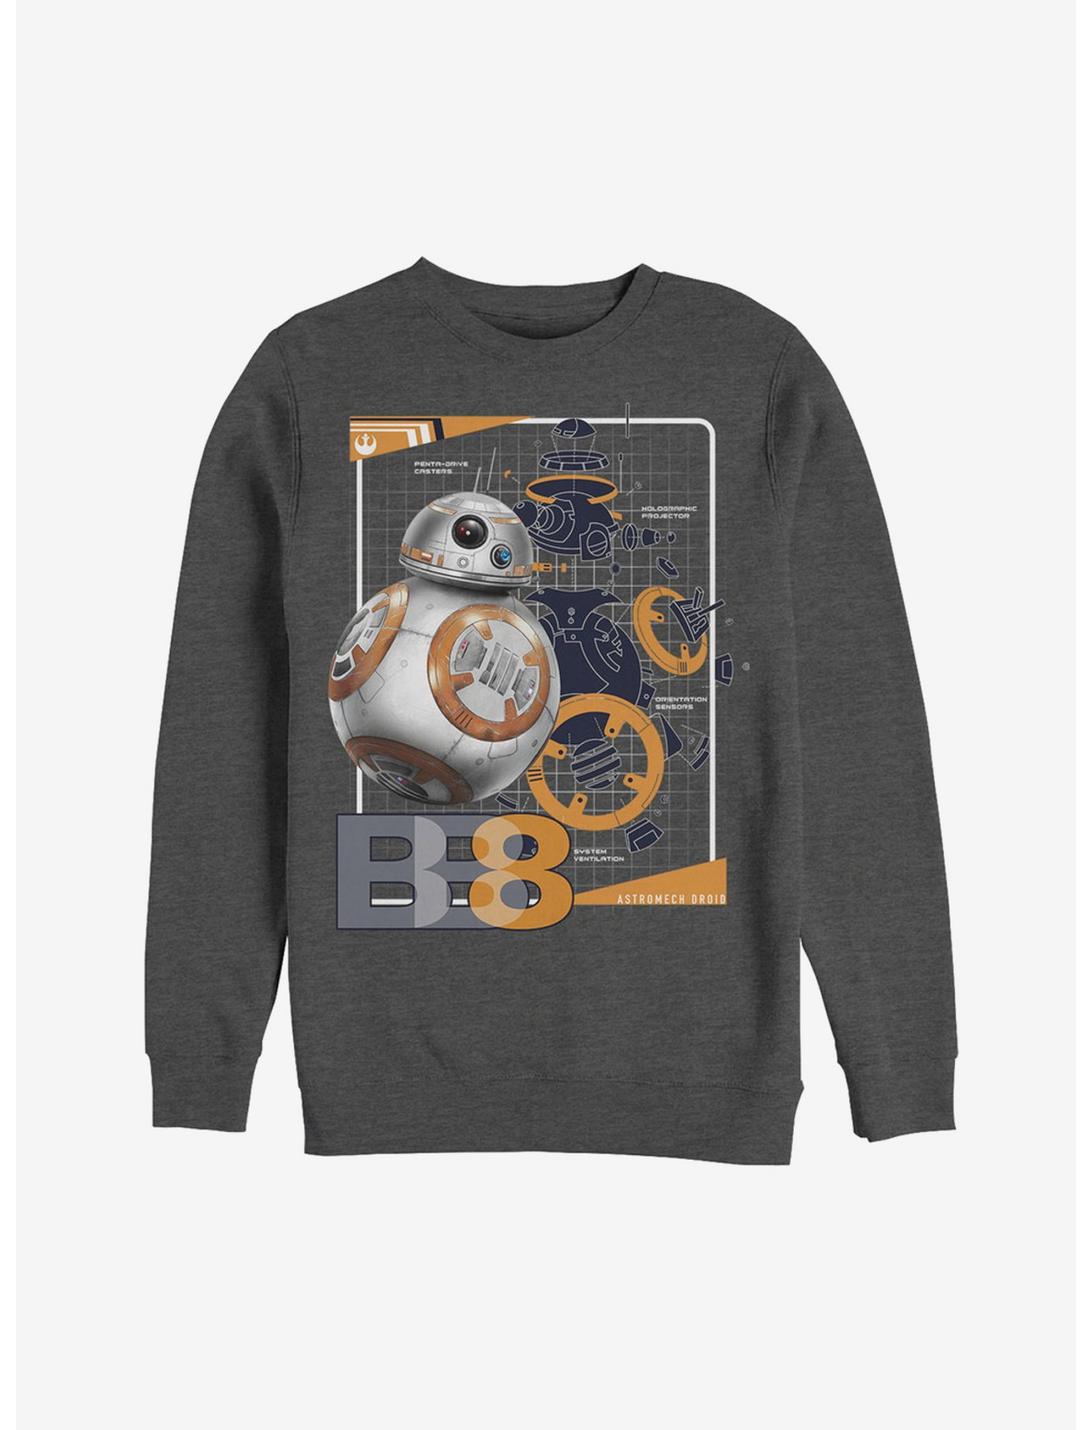 Star Wars BB-8 Schematics Sweatshirt, CHAR HTR, hi-res